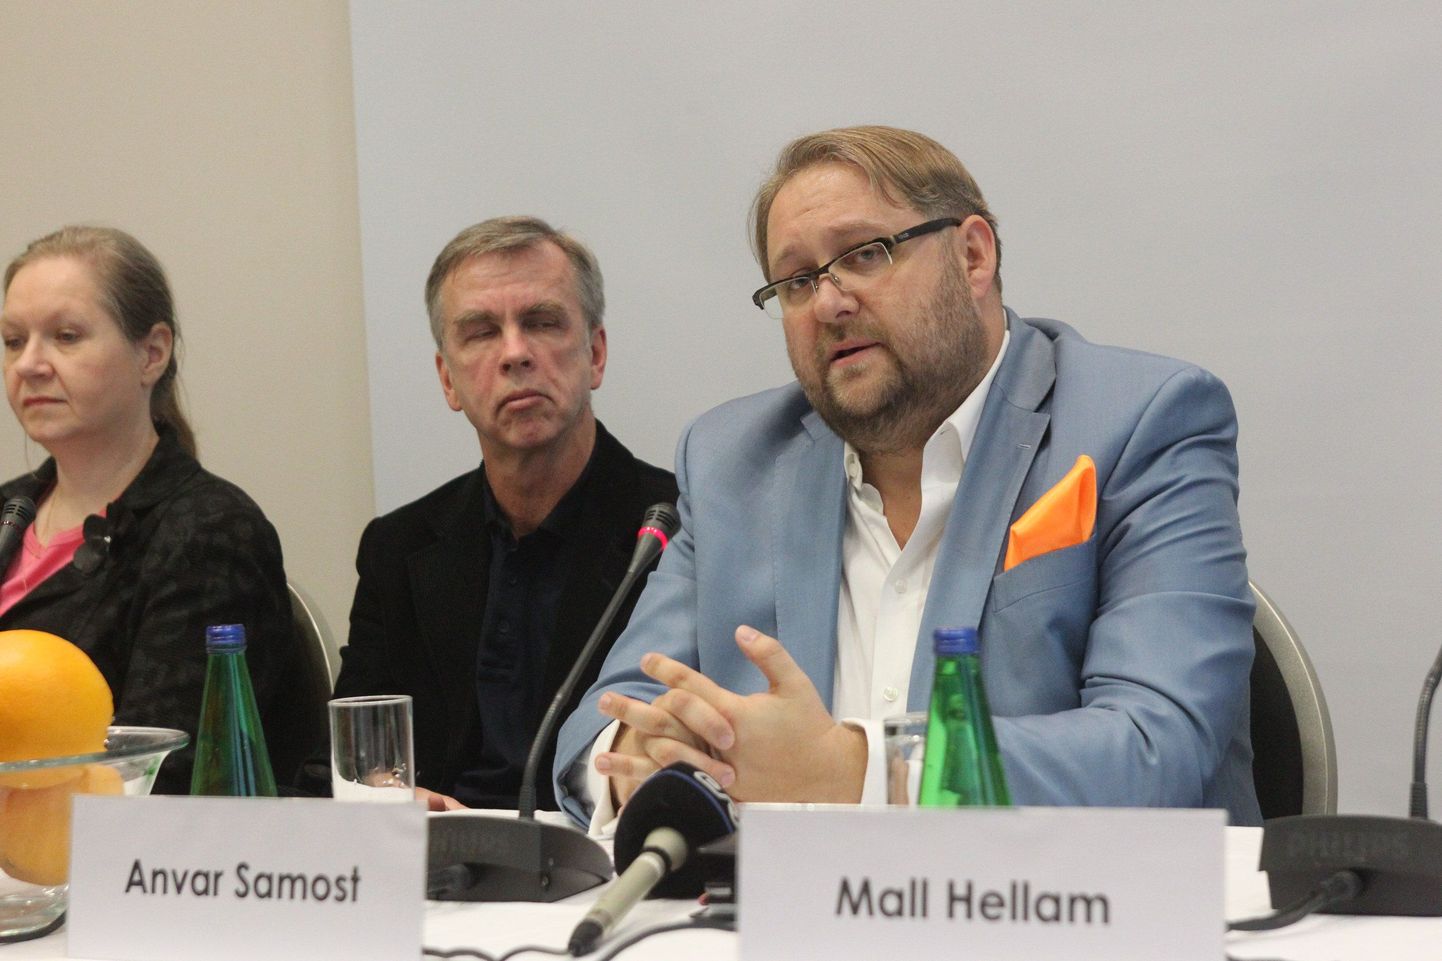 Ajakirjanik Anvar Samost korraldas  2014. aasta veebruaris pressikonverentsi, kus ta teatas, et 
astub Isamaa ja Res Publica Liidu liikmeks ja kandideerib europarlamenti. 13 kuud hiljem astus ta erakonnast välja.